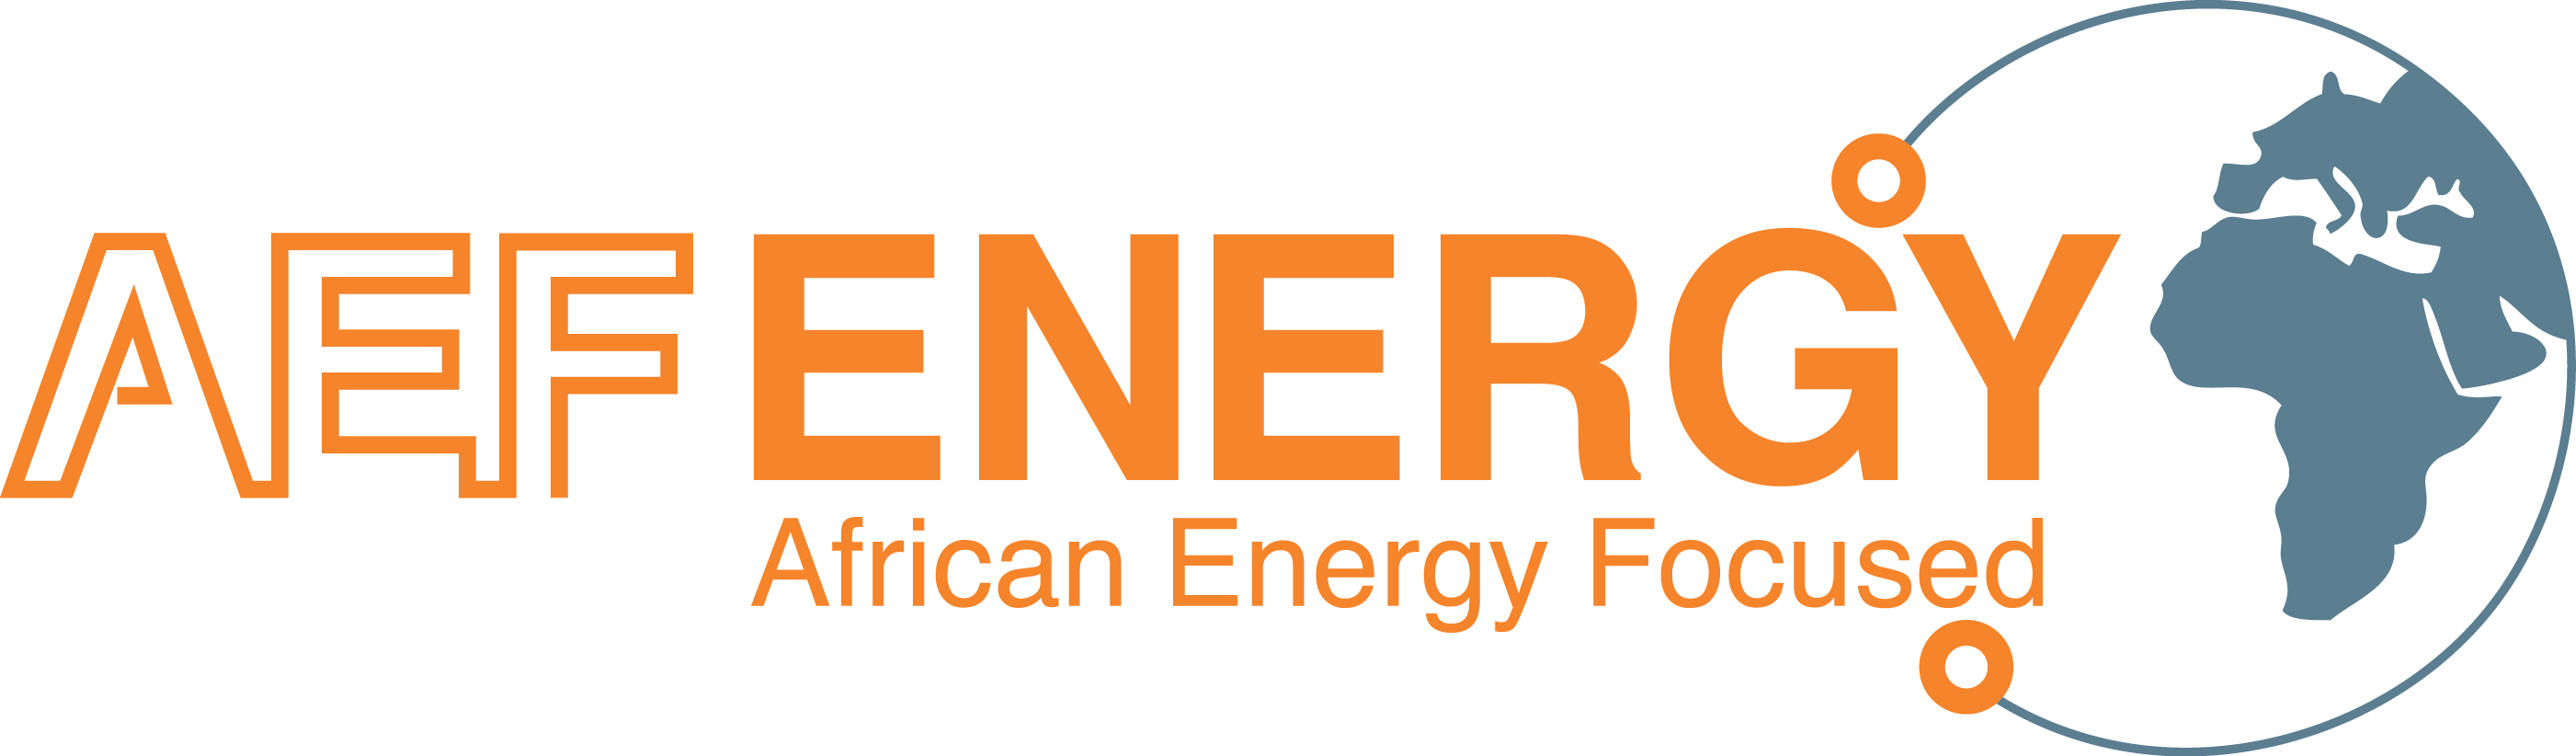 AEF Energy